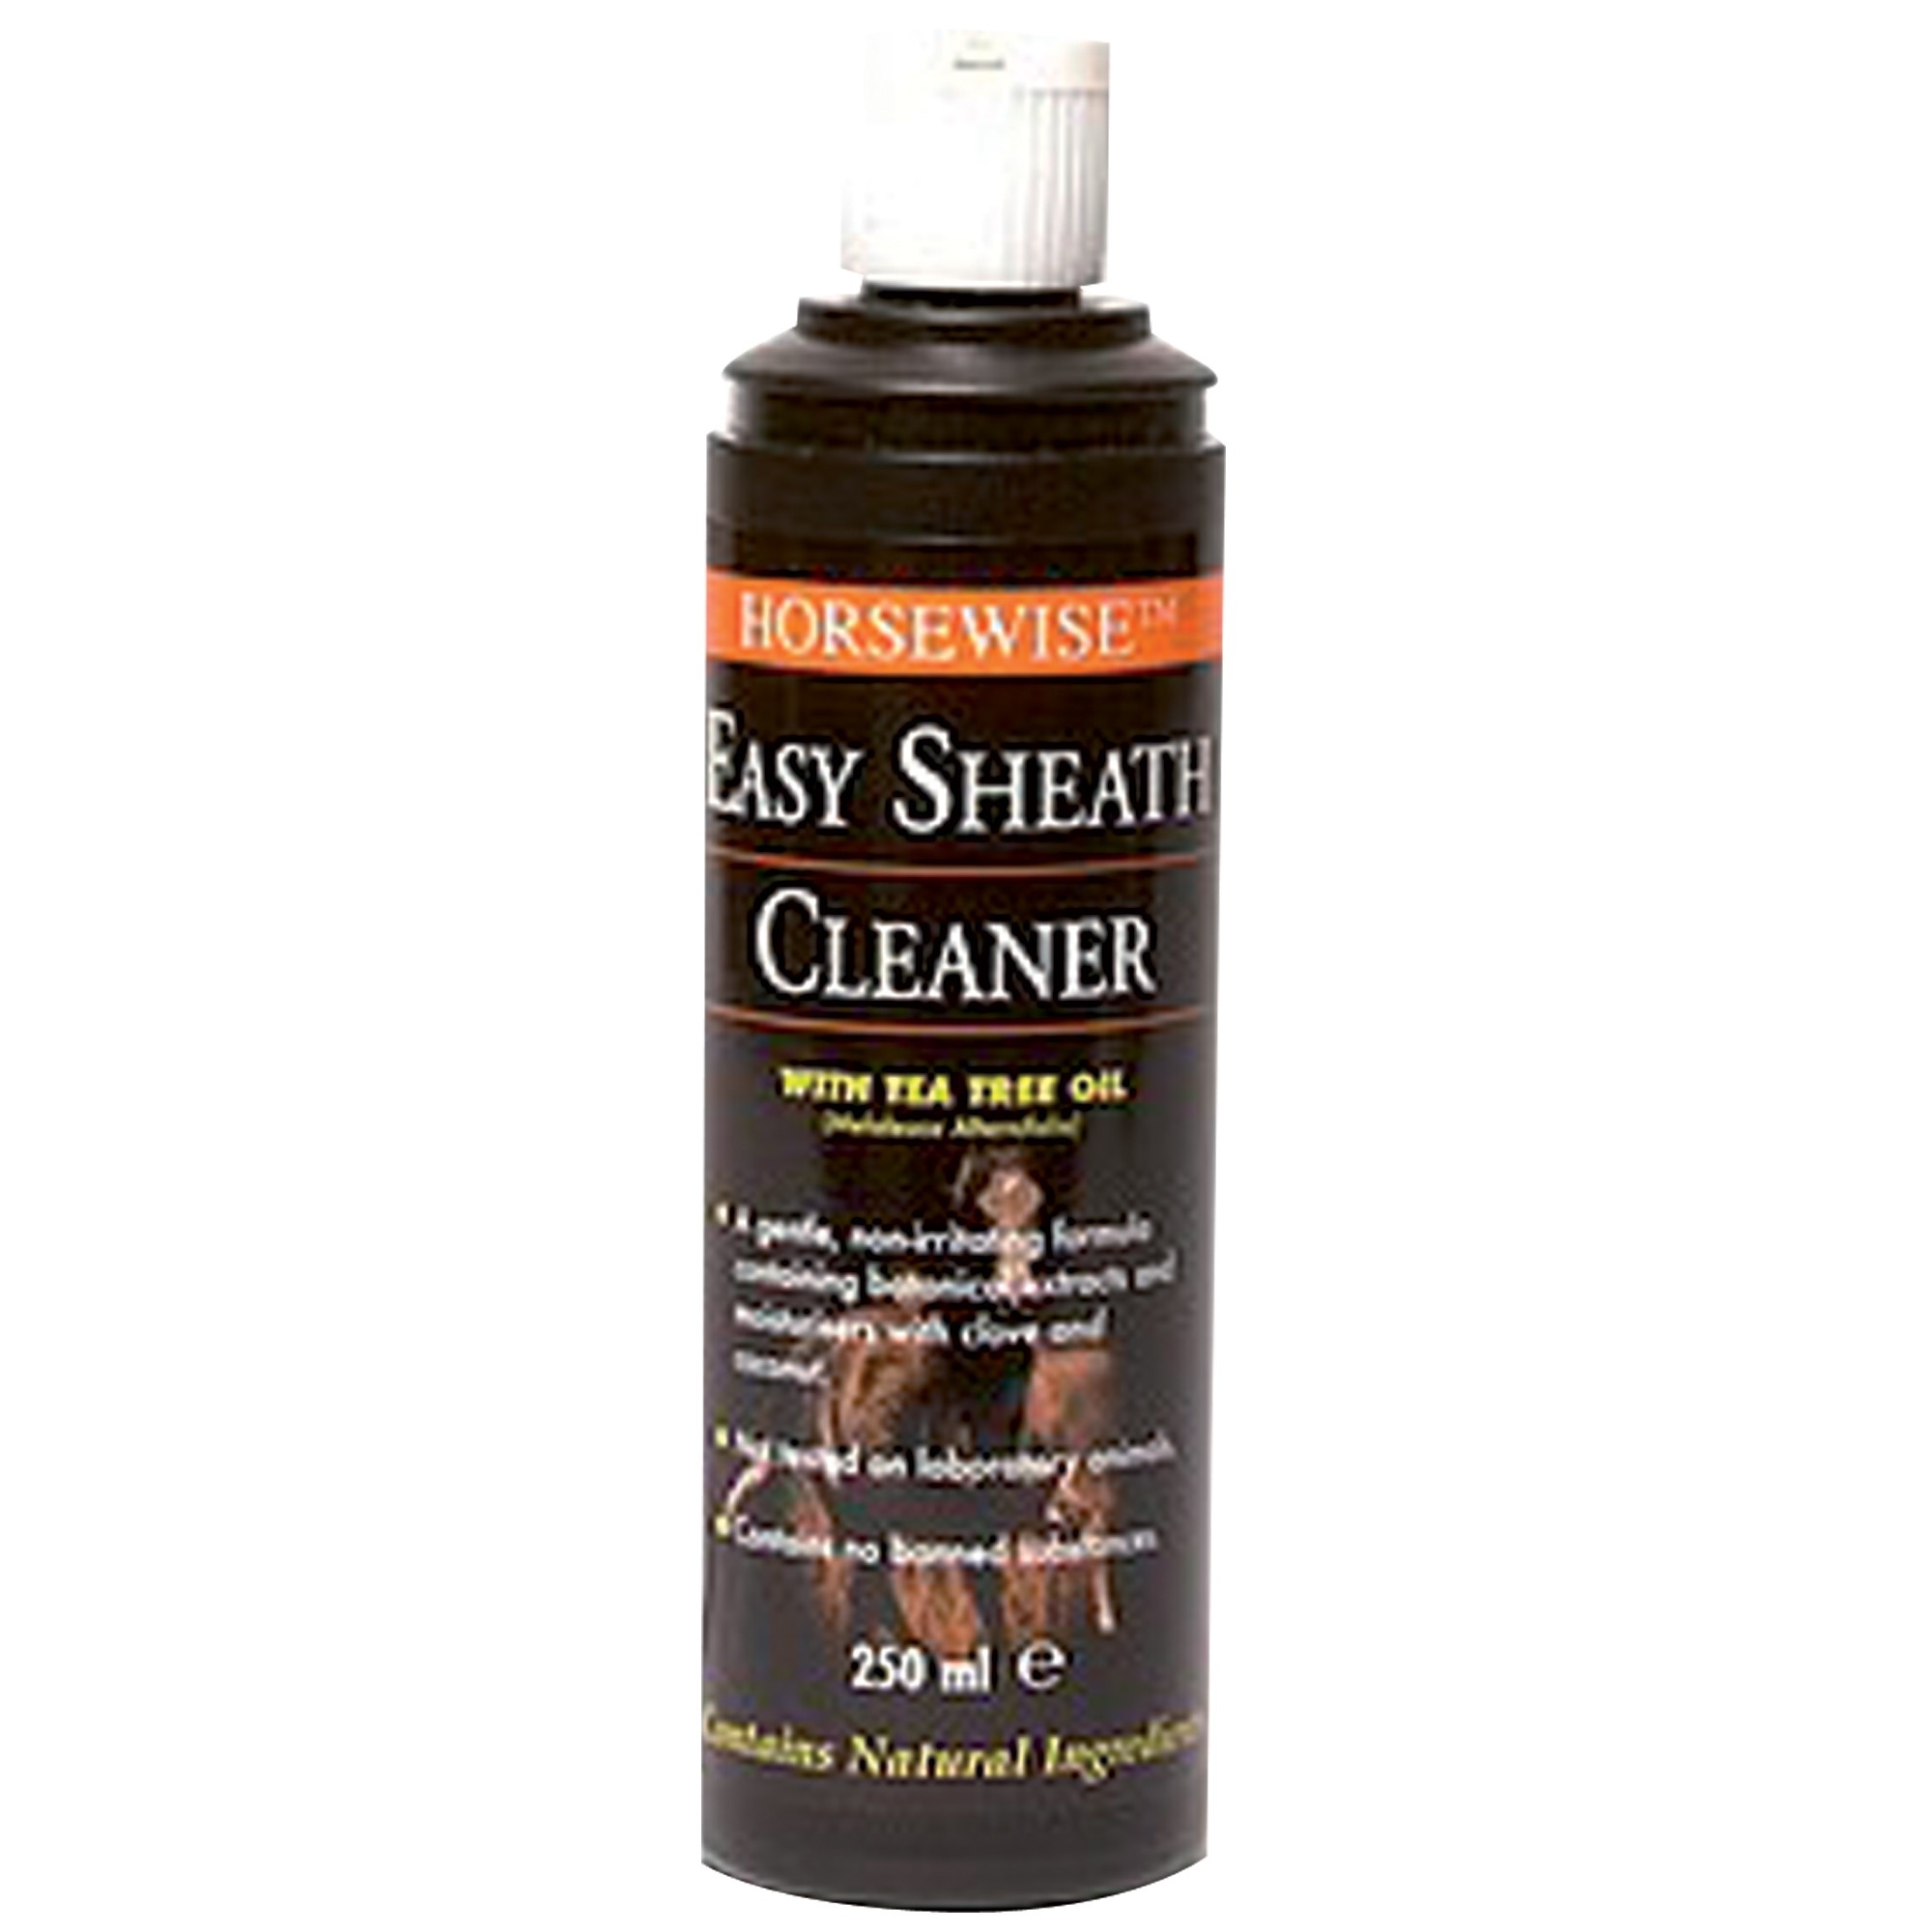 Horsewise - Easy Sheath Cleaner